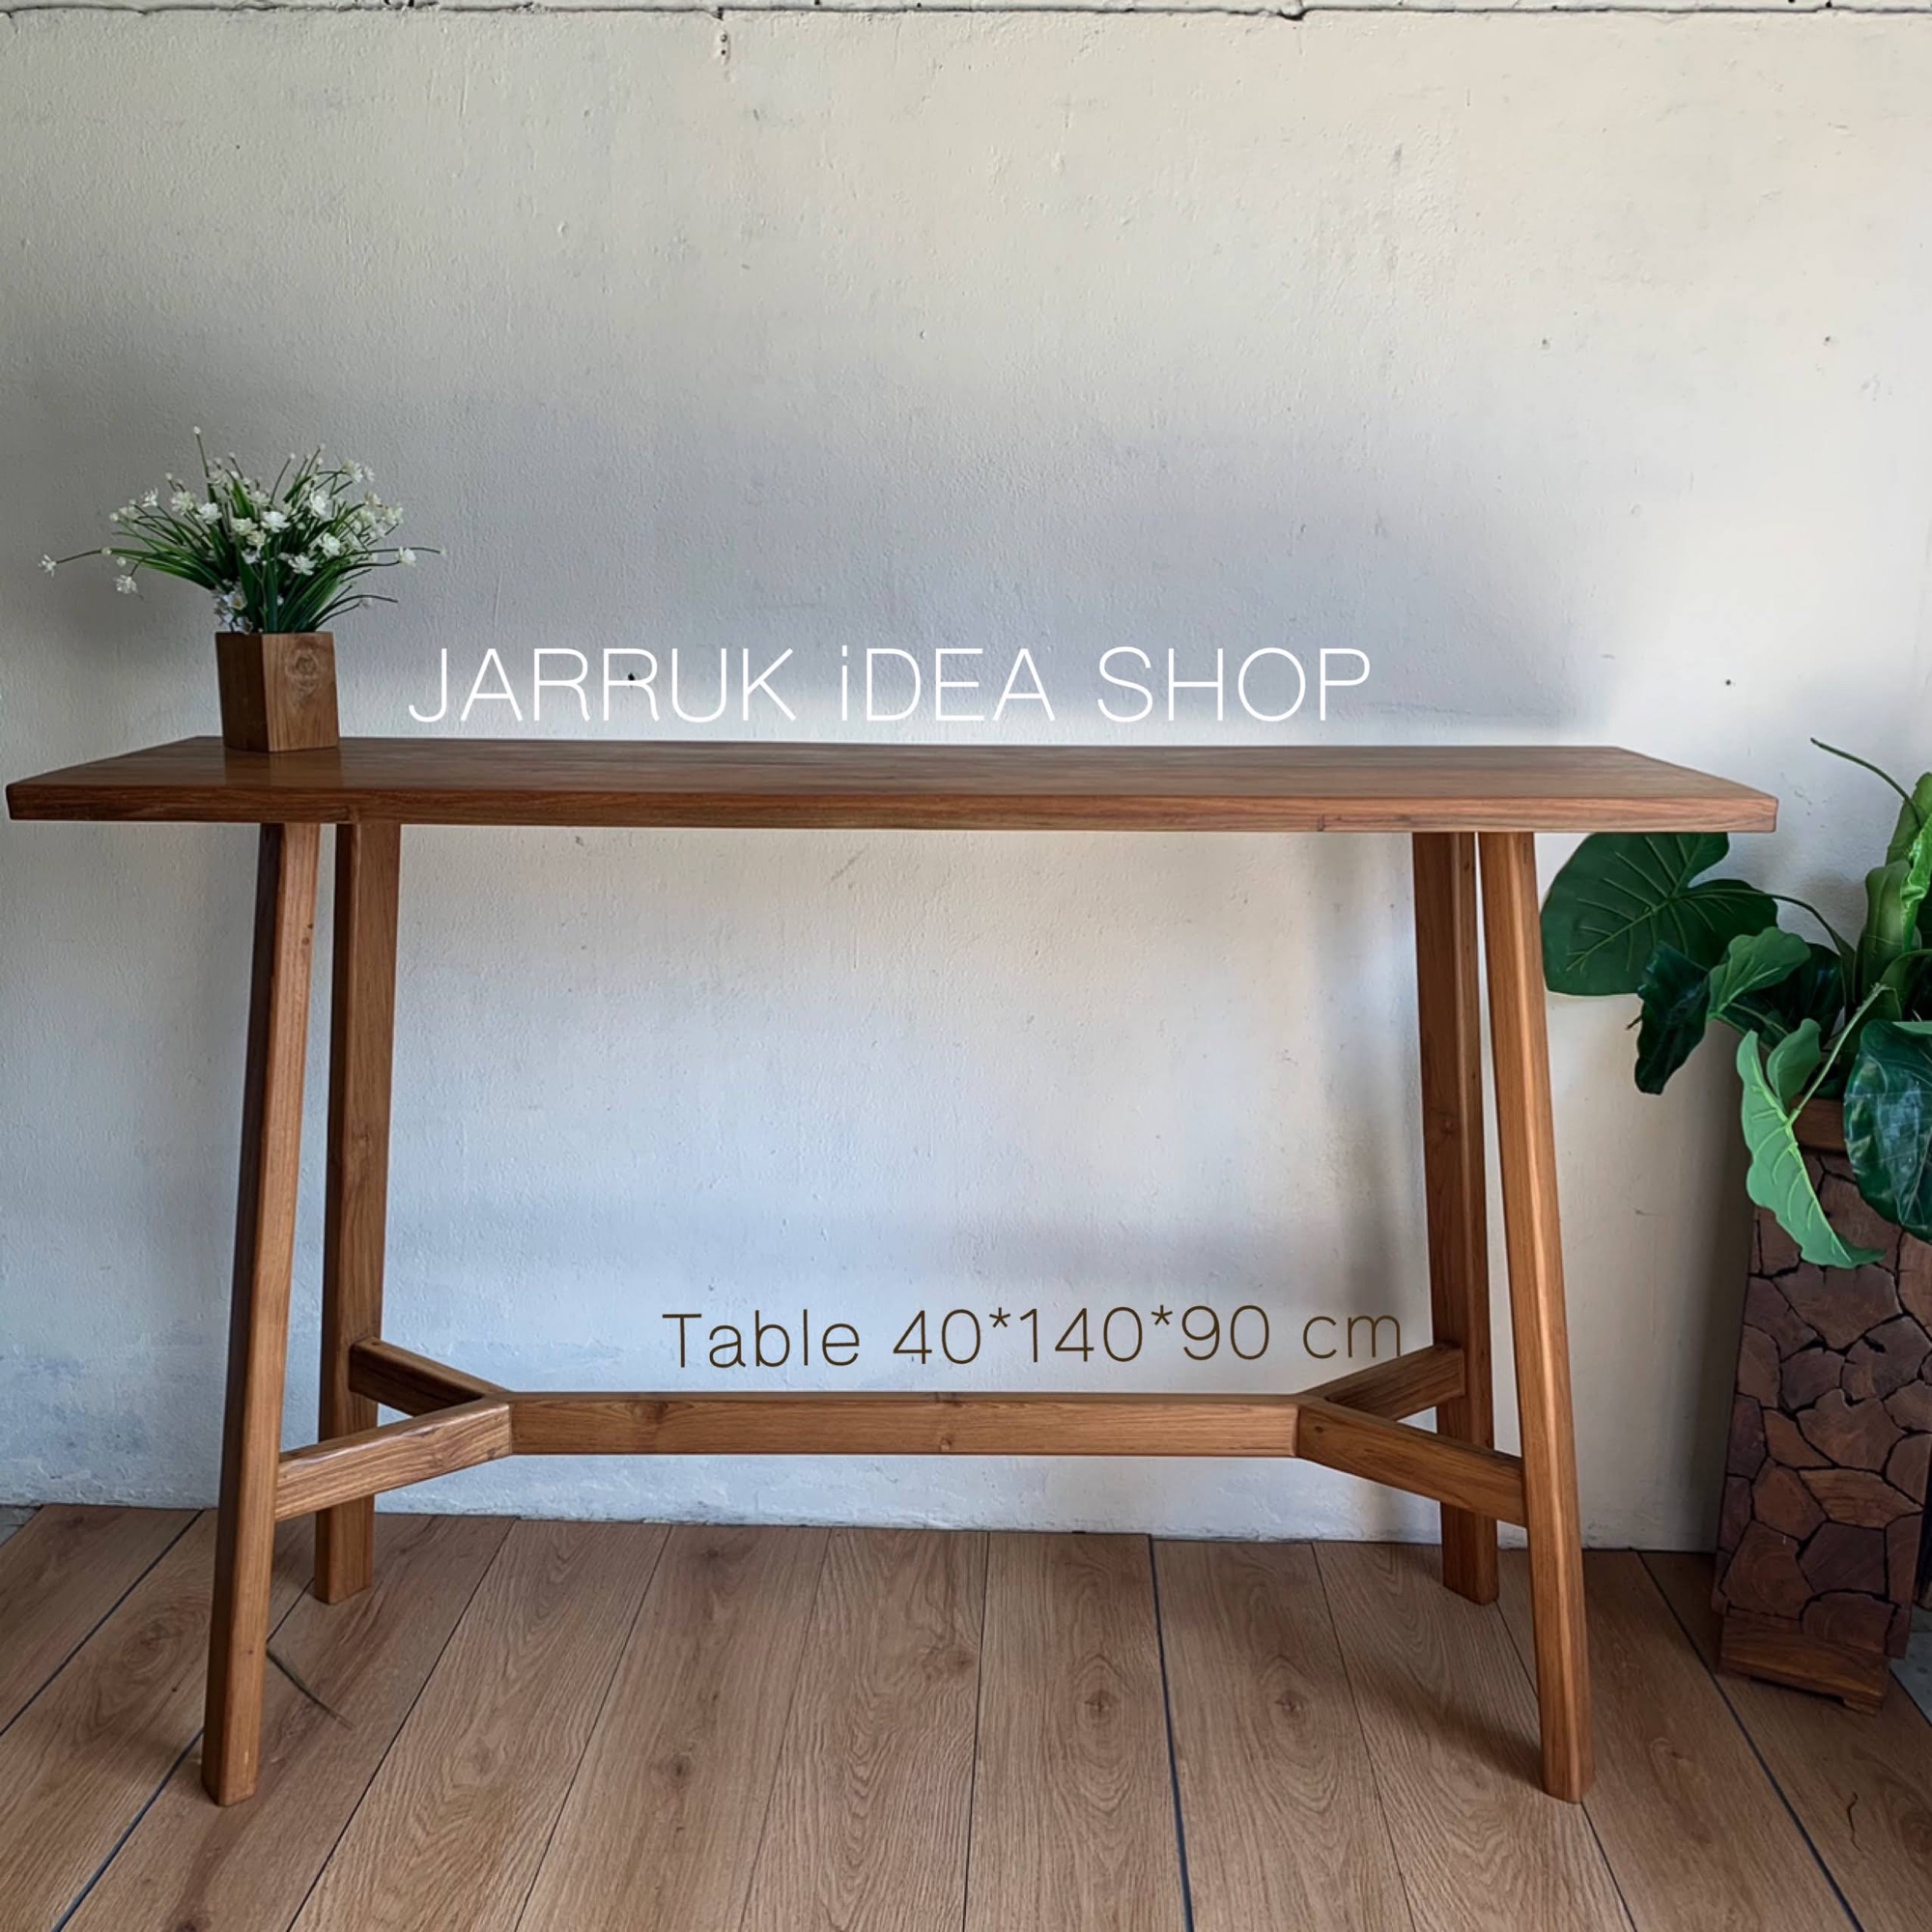 โต๊ะ โต๊ะบาร์ โต๊ะบาร์ไม้ โต๊ะบาร์ไม้สัก ขนาด 40*140*90cm เฉพาะโต๊ะ1ตัว